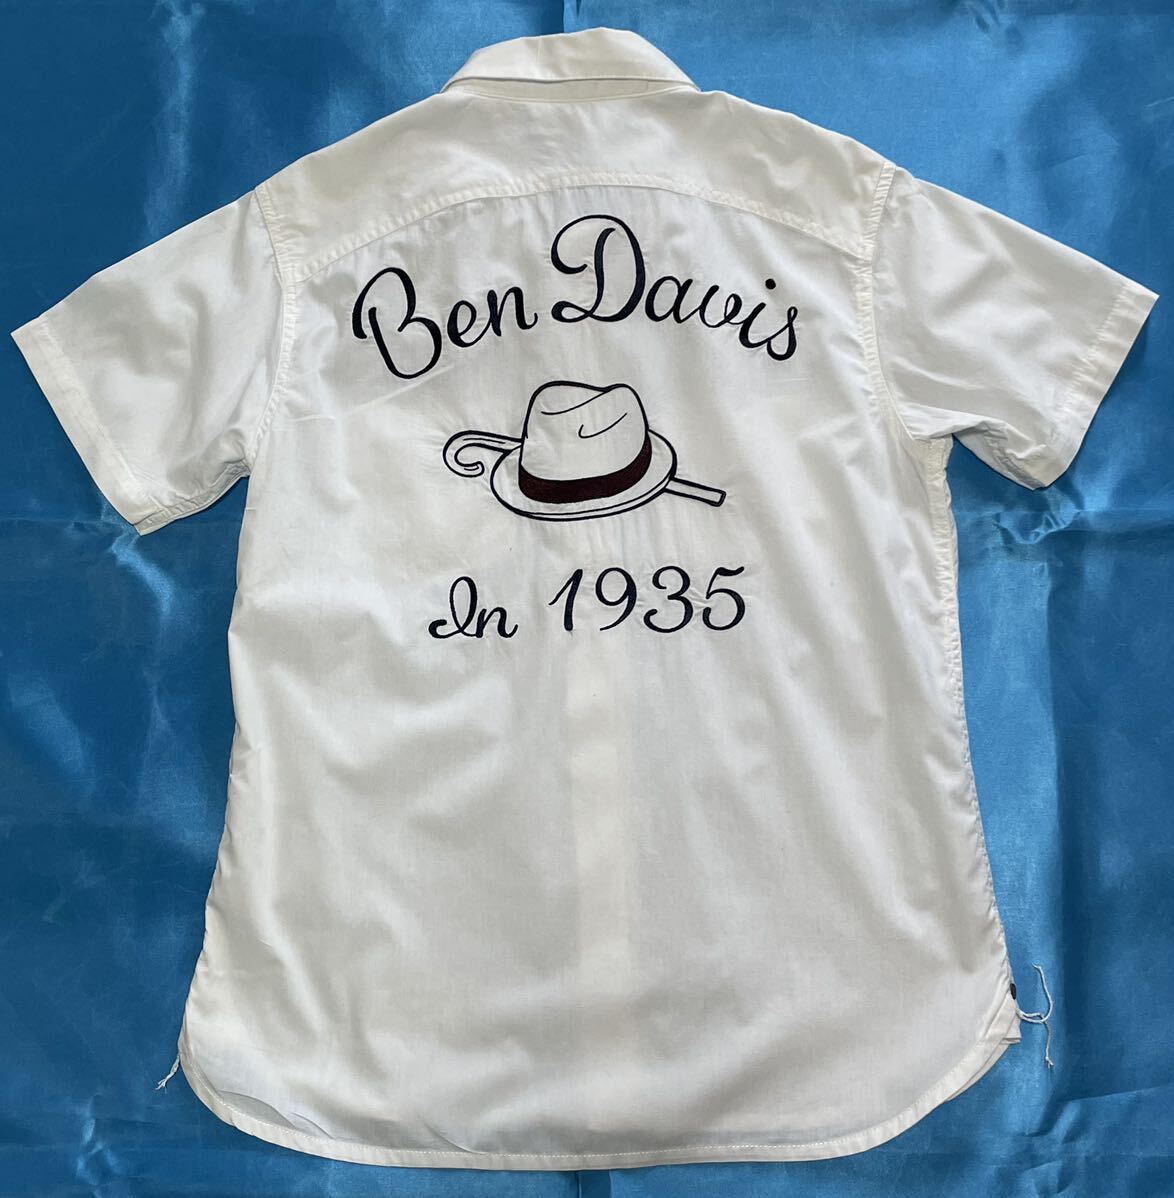 ベン・デイビス【BEN DAVIS】ベンデビス・サンマリノ・1935・白色ワークシャツ・ボーリングシャツ・コットン100%・オシャレ刺繍・Mサイズ_画像1